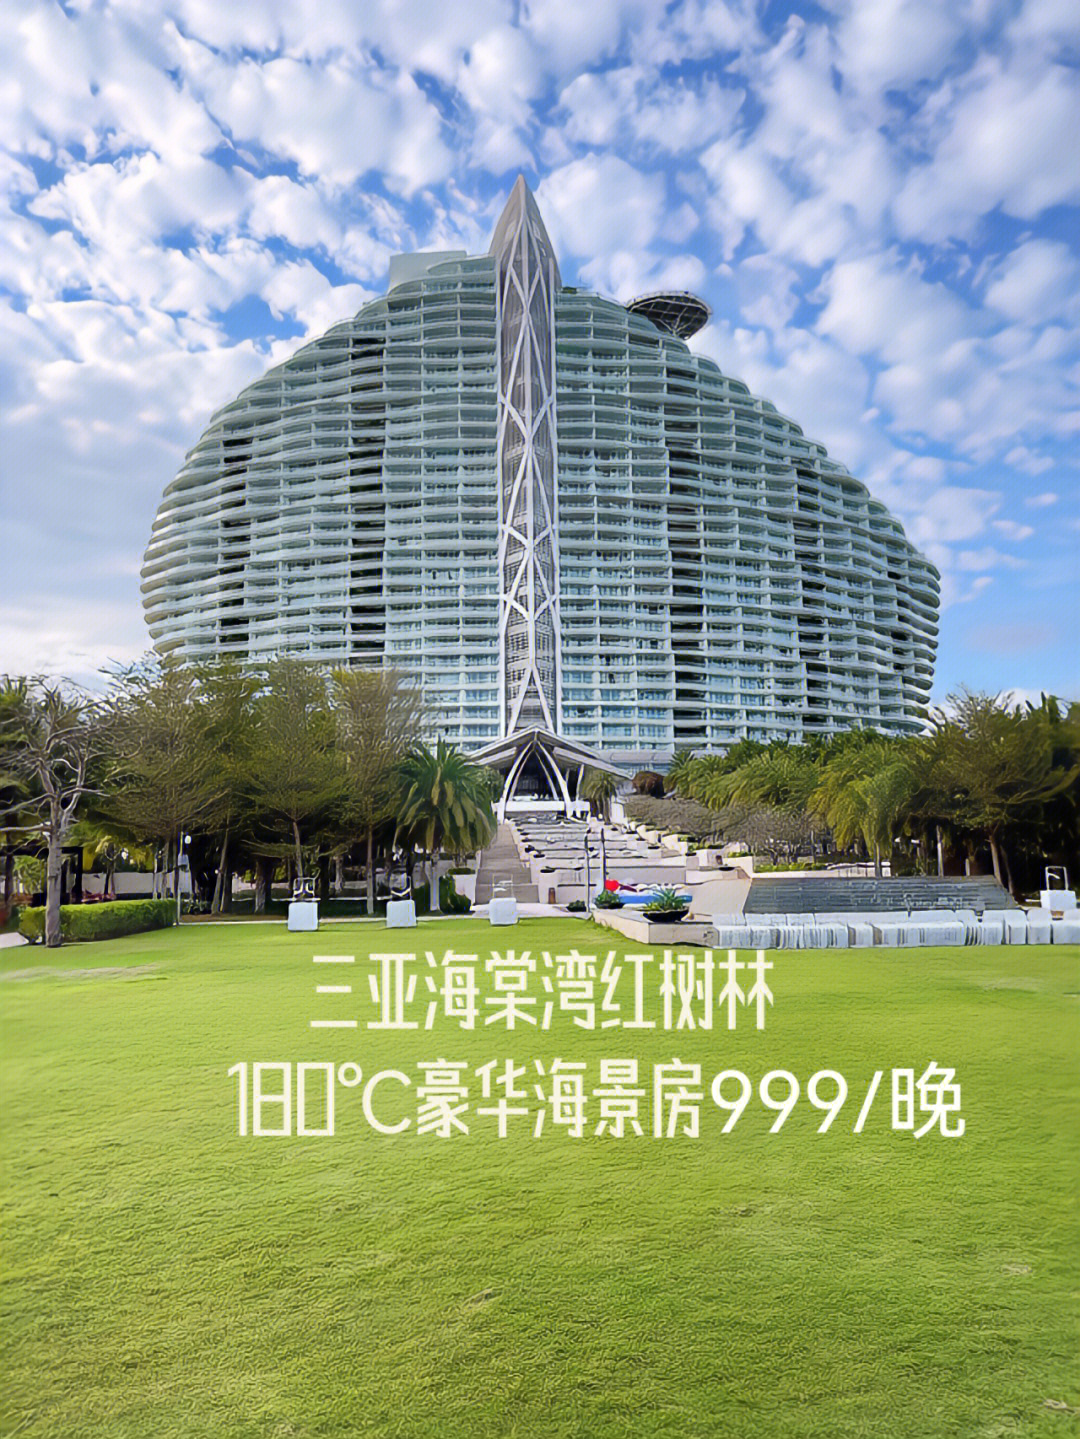 三亚红树林酒店logo图片